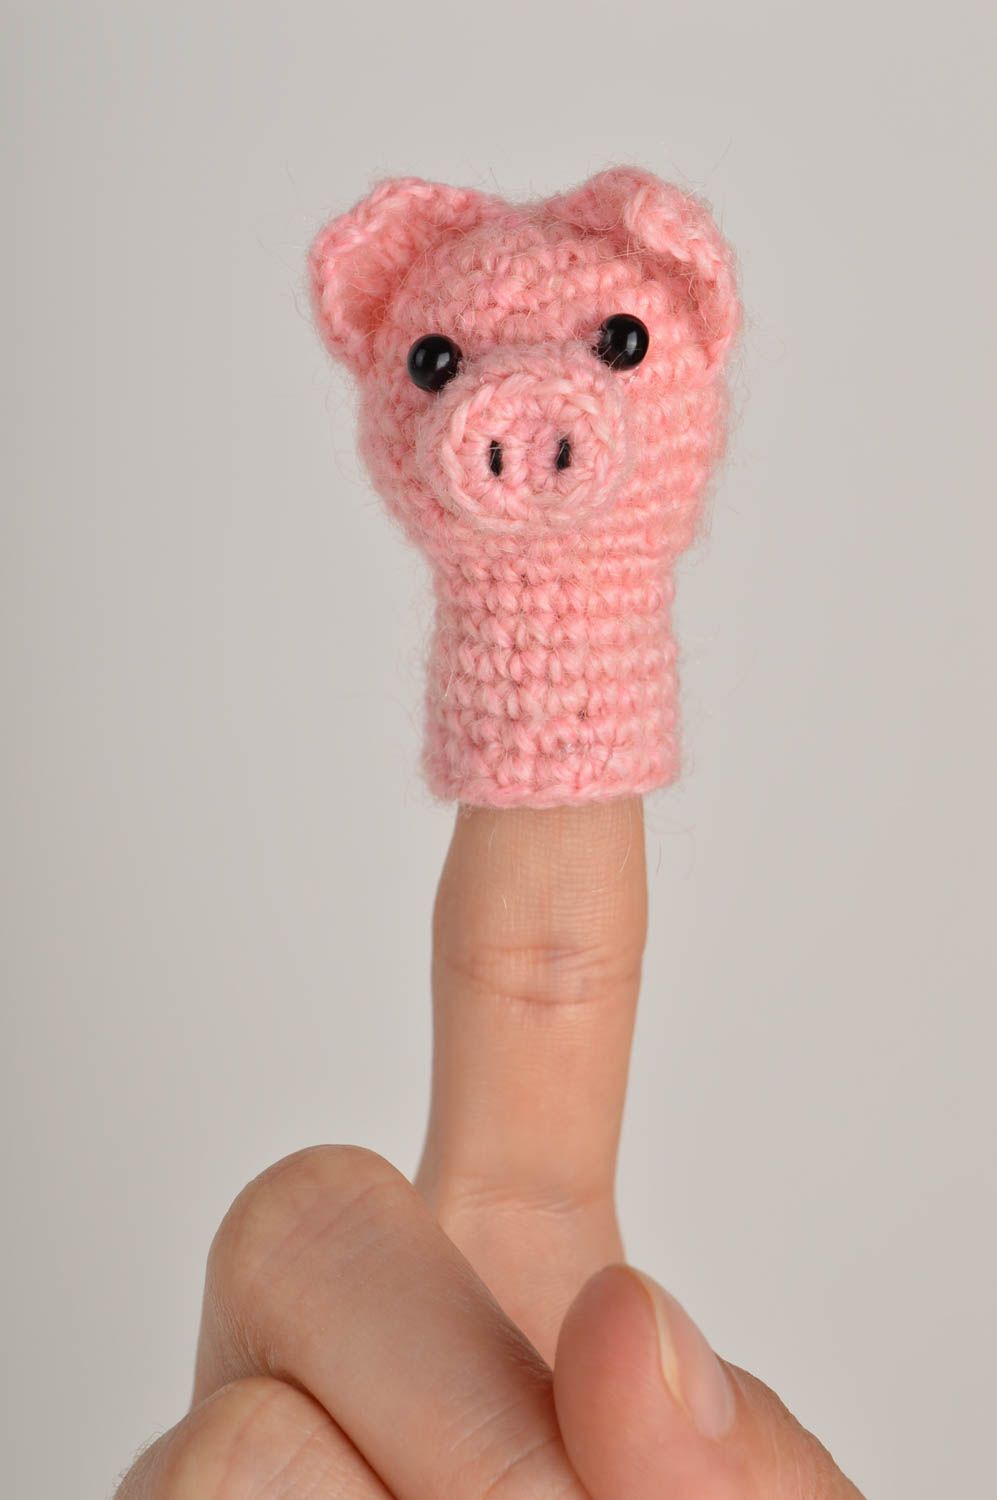 Títere de dedo tejido hecho a mano juguete original bonito regalo para niños foto 1